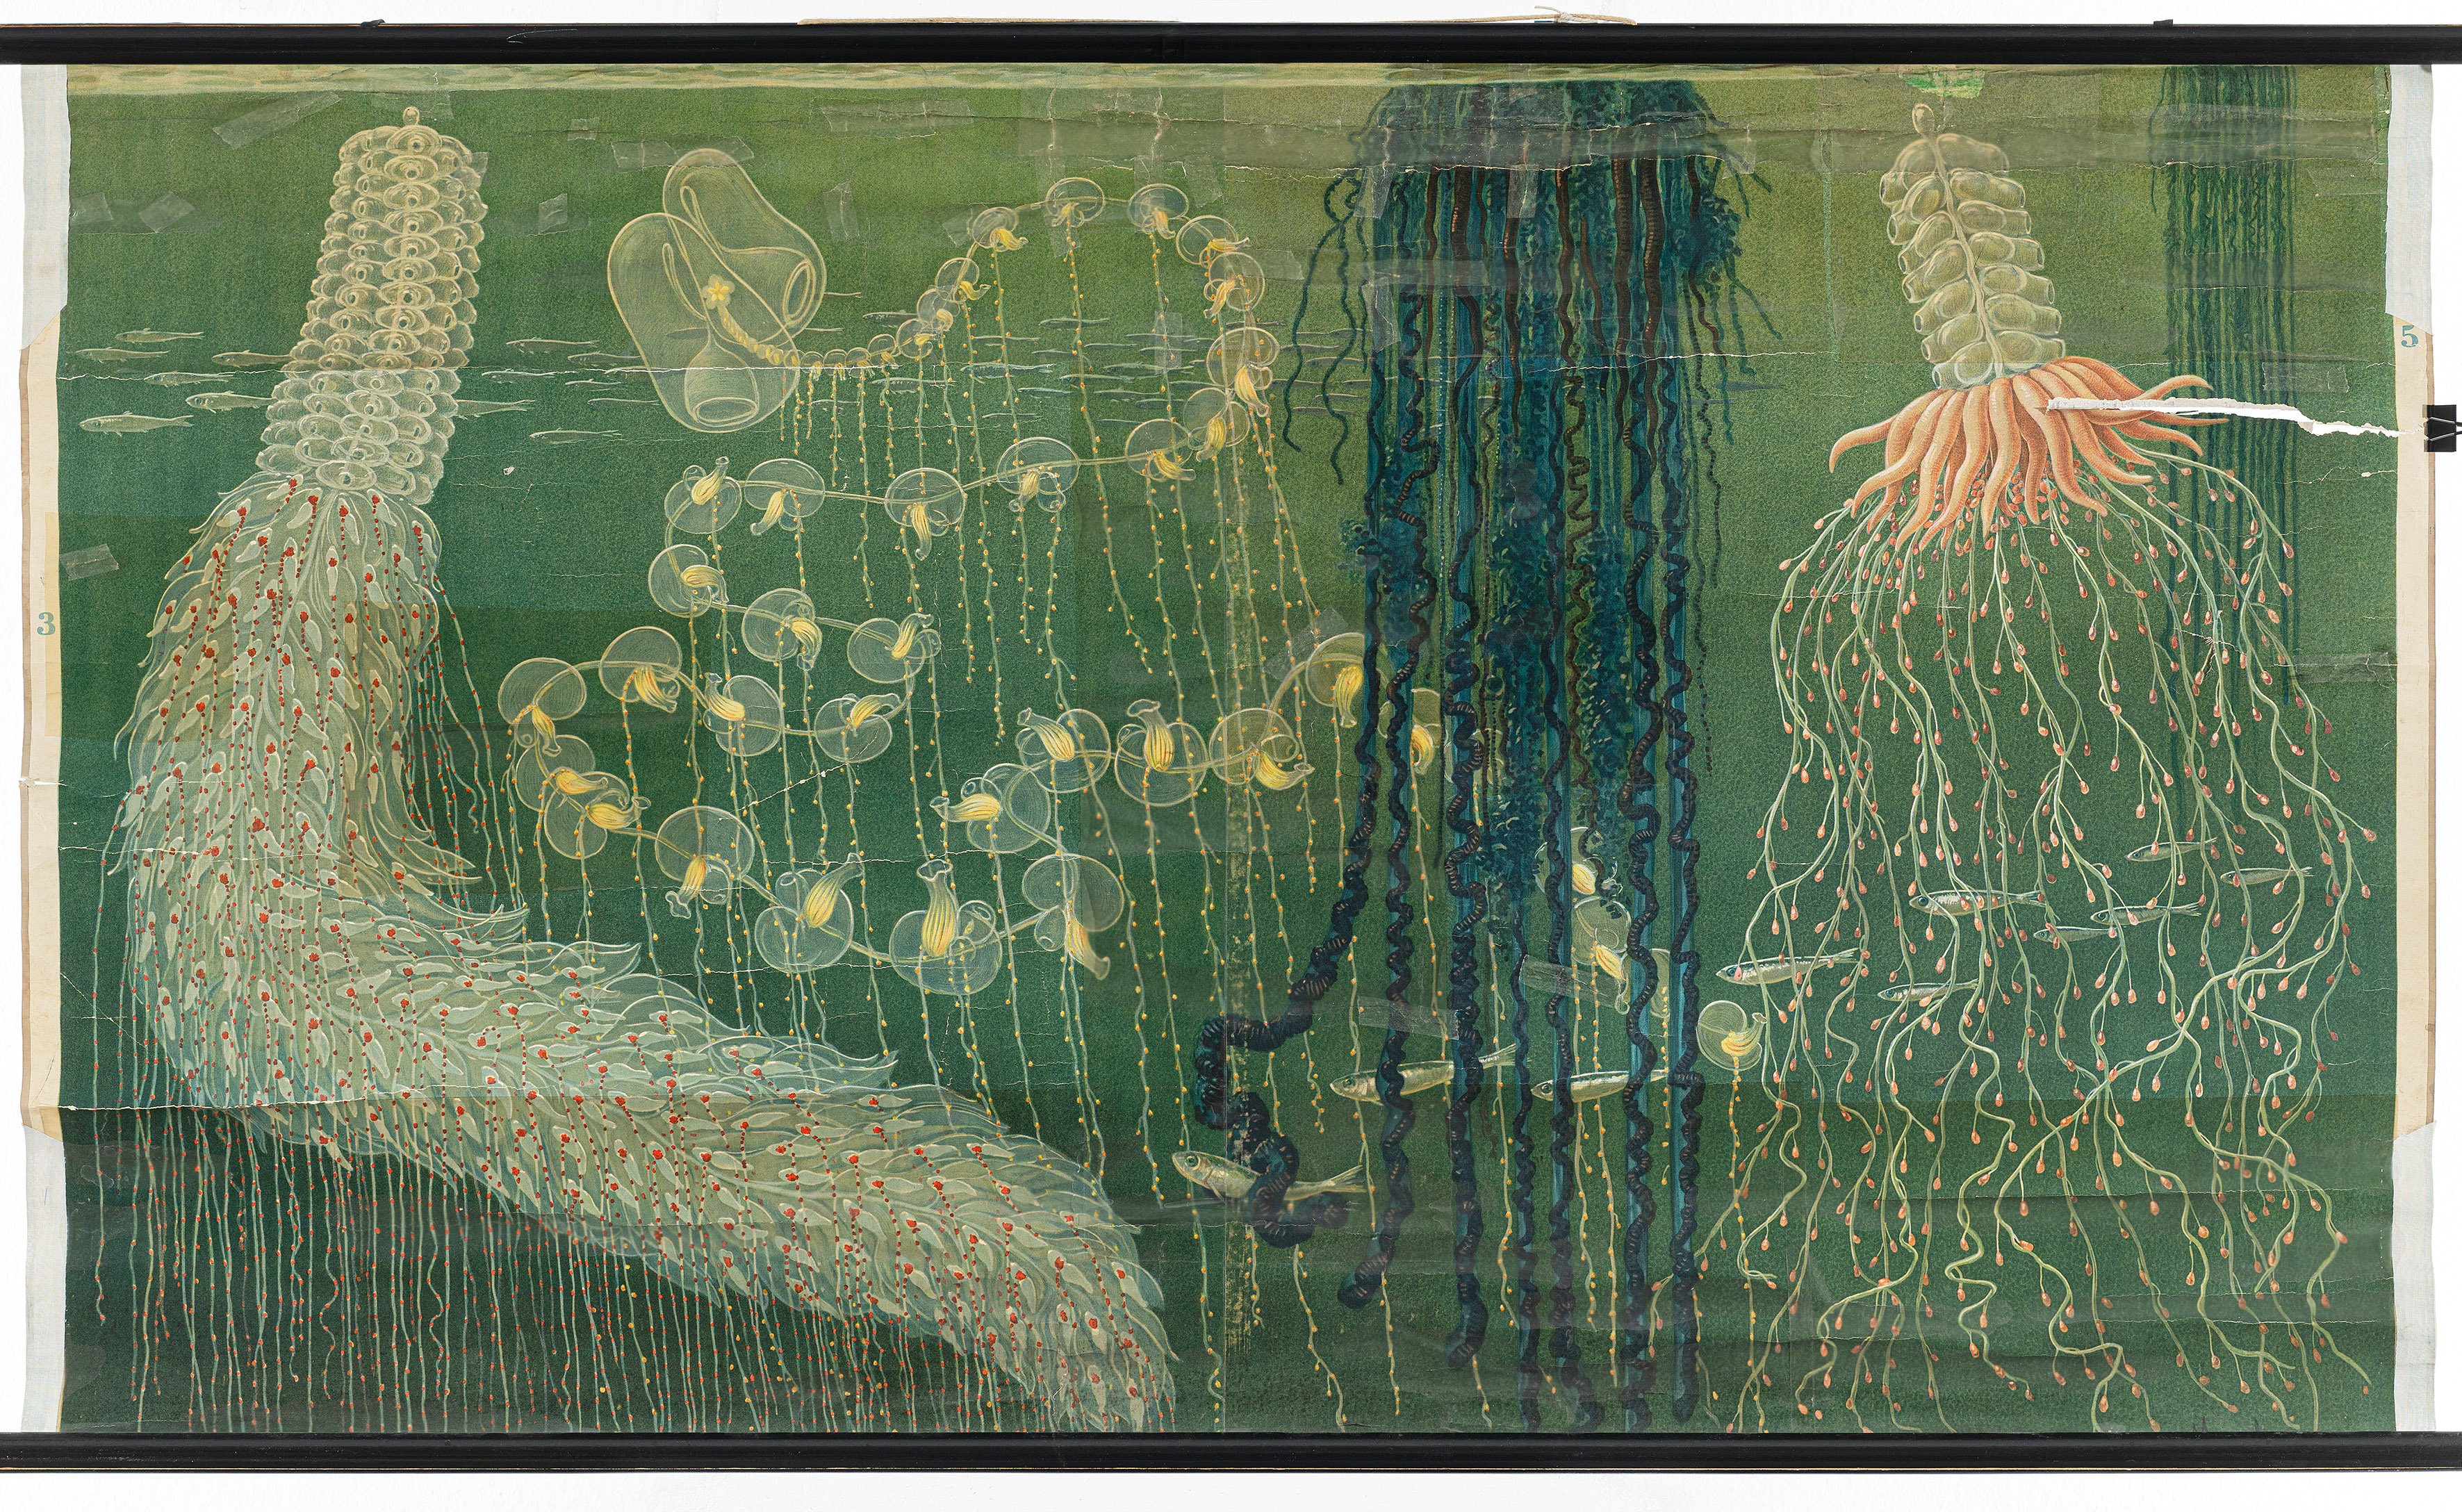 Schulwandbild "Röhrenquallen (Siphonophoren) des Mittelmeeres" (Mitte Museum/Bezirksamt Mitte von Berlin Public Domain Mark)